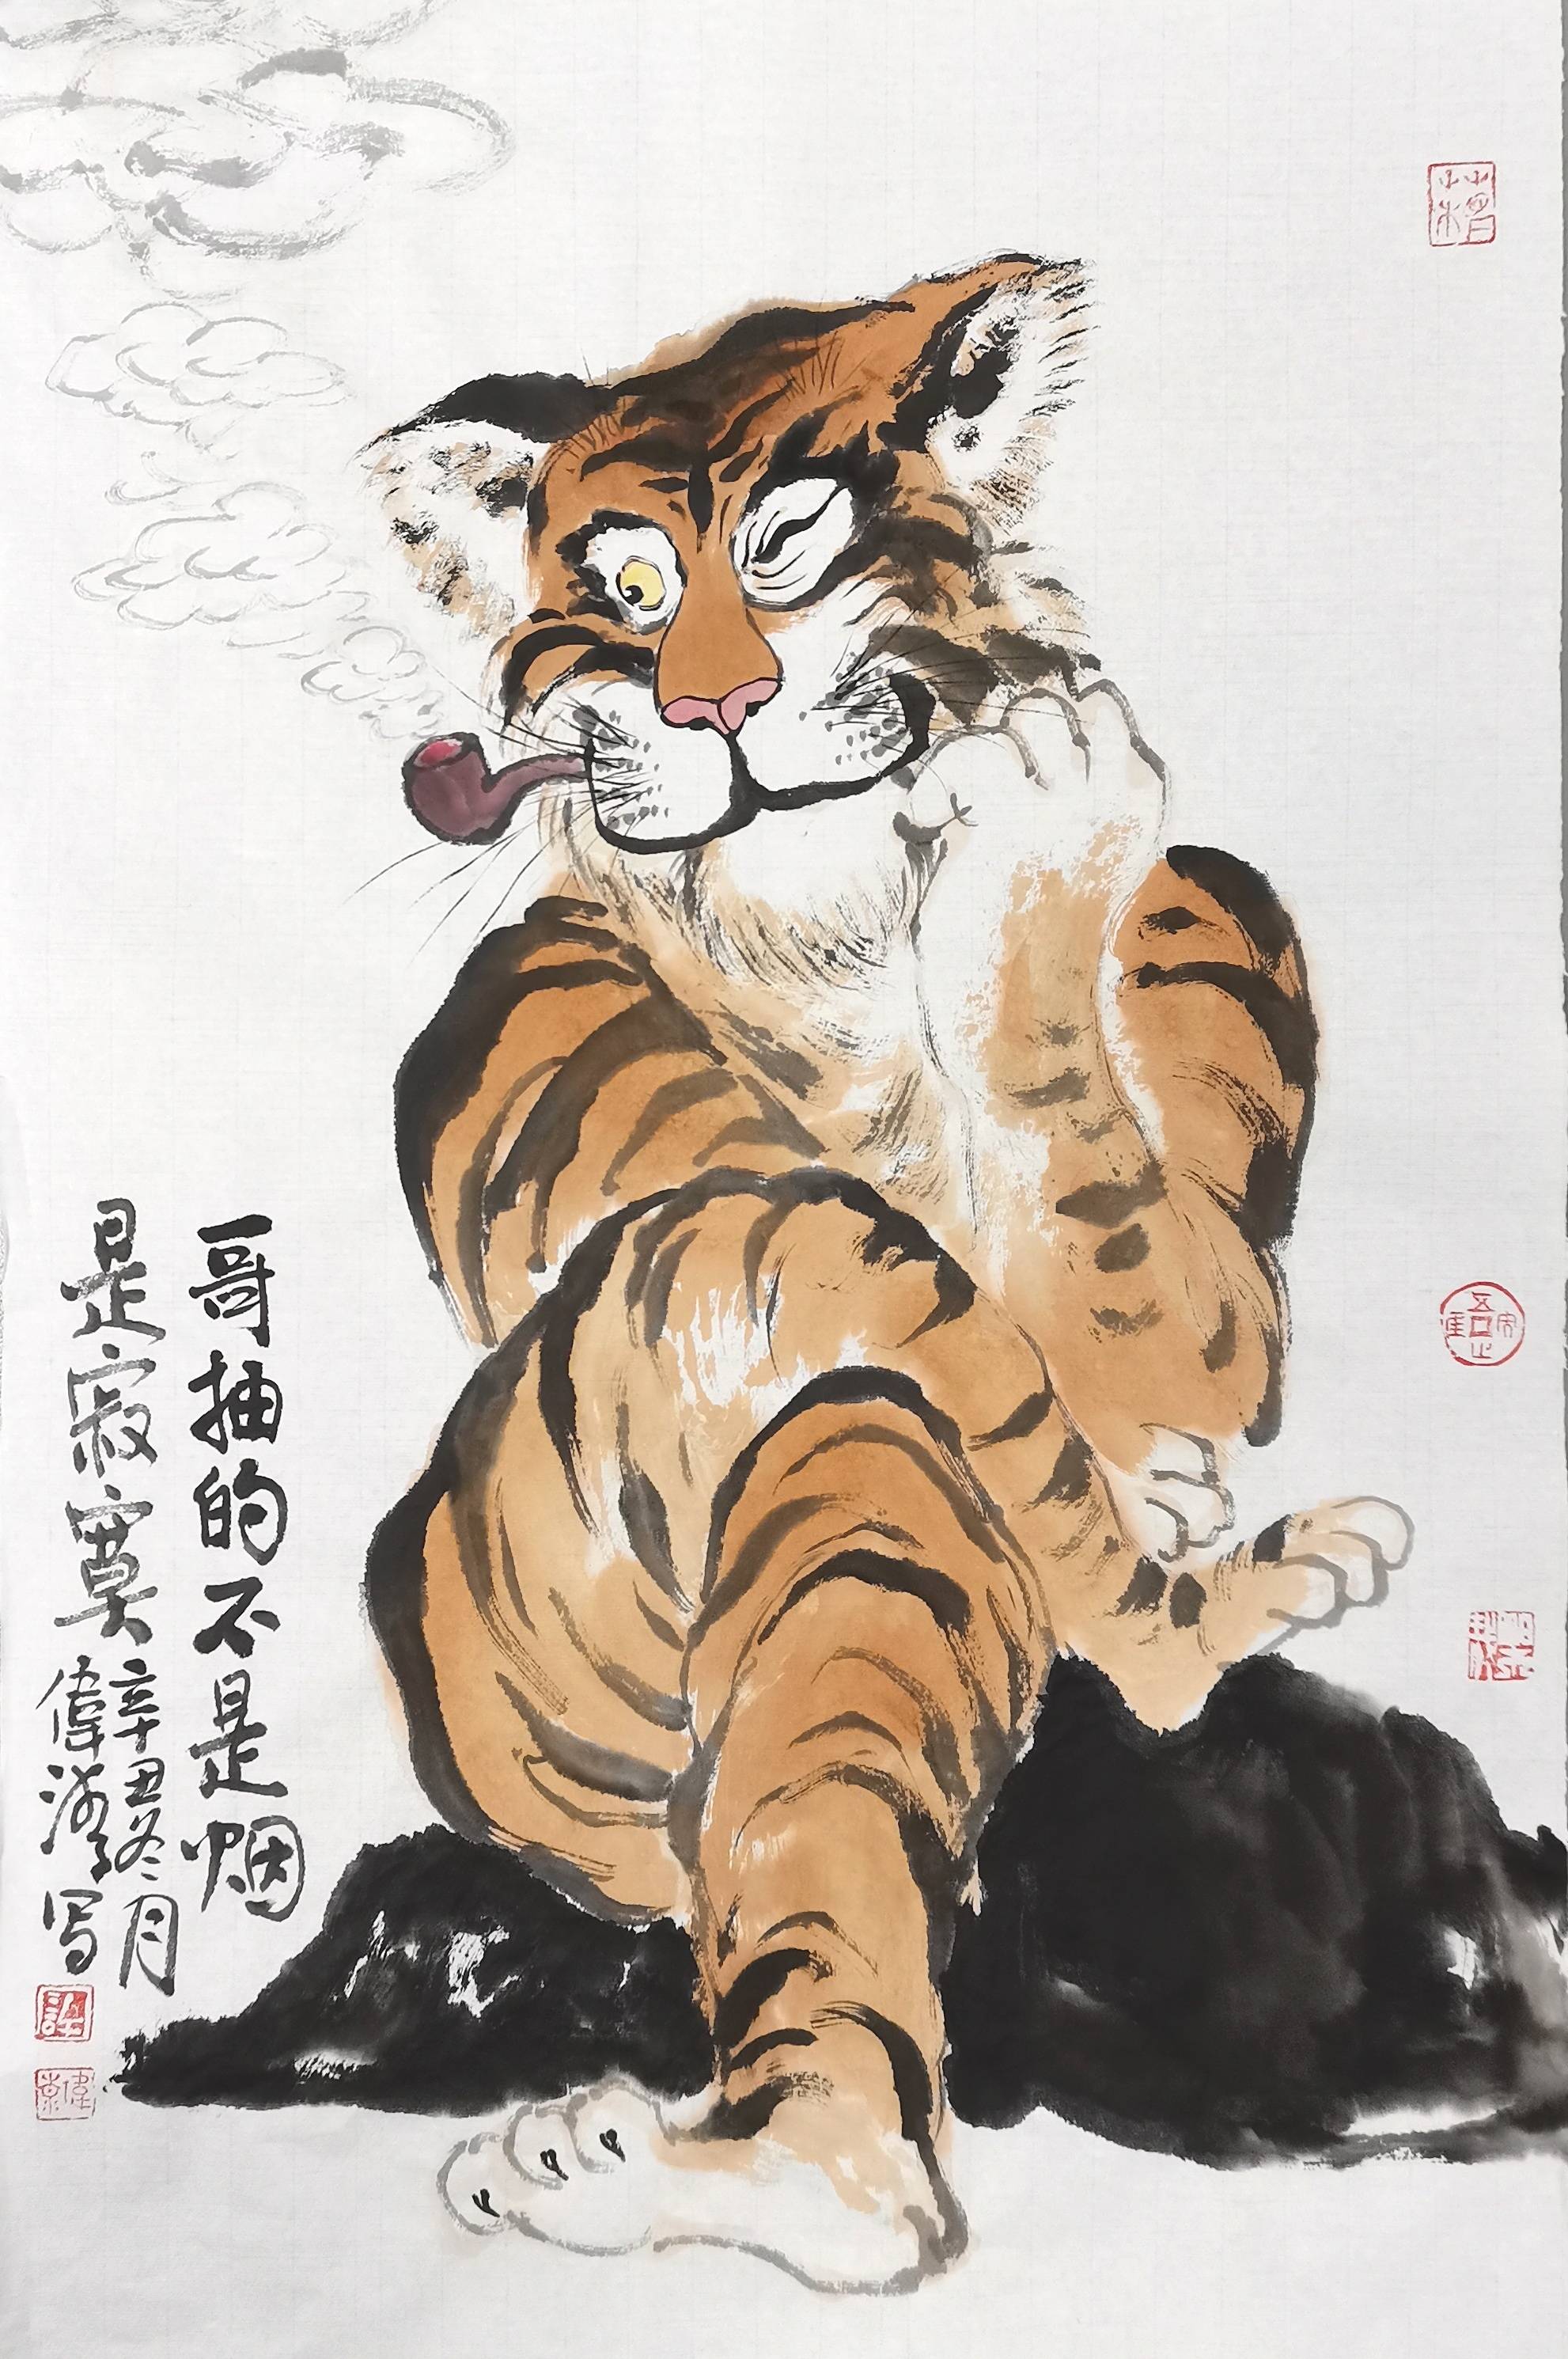 在传统中国画语境里,虎是王者象征,是不苟言笑的